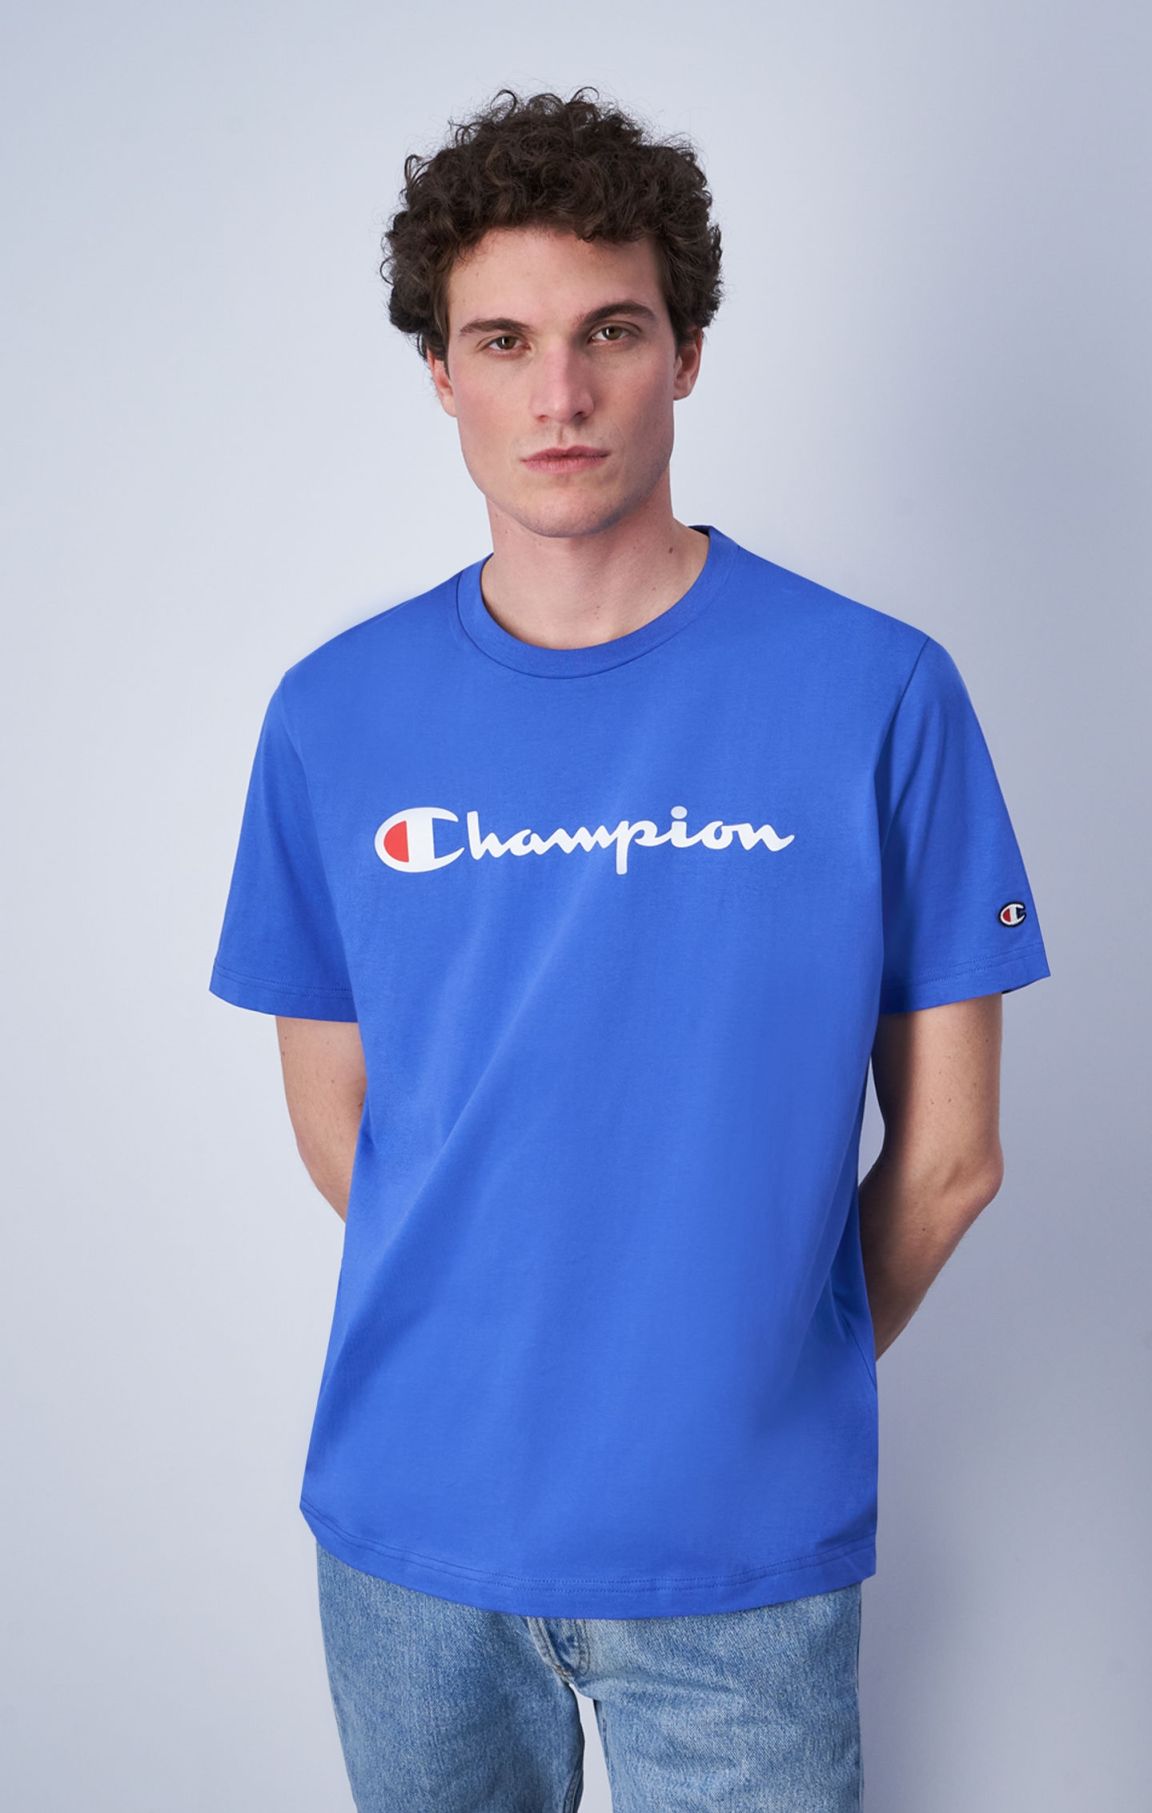 Rundhals-T-Shirt mit großem Champion-Logo